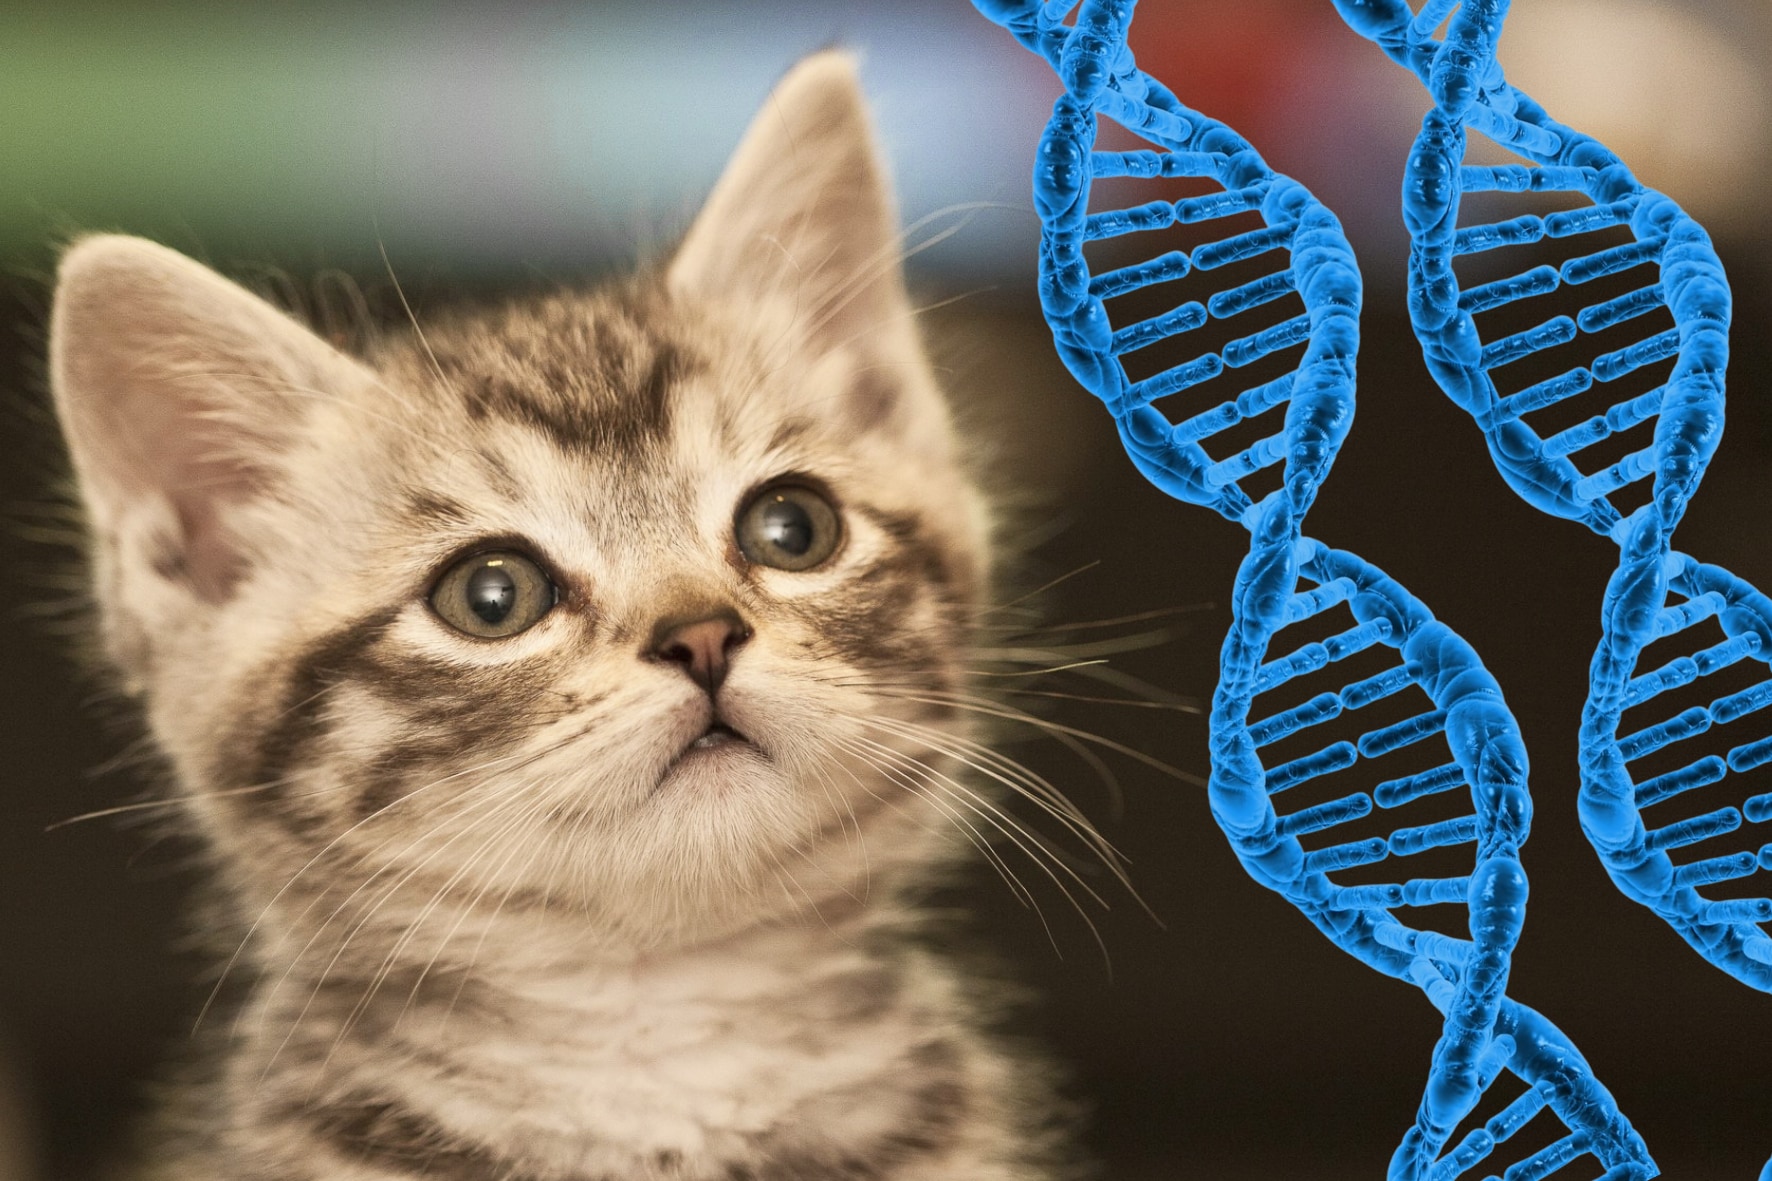 遺伝操作で 猫アレルギーの人でも飼える猫 が誕生しつつある ナゾロジー